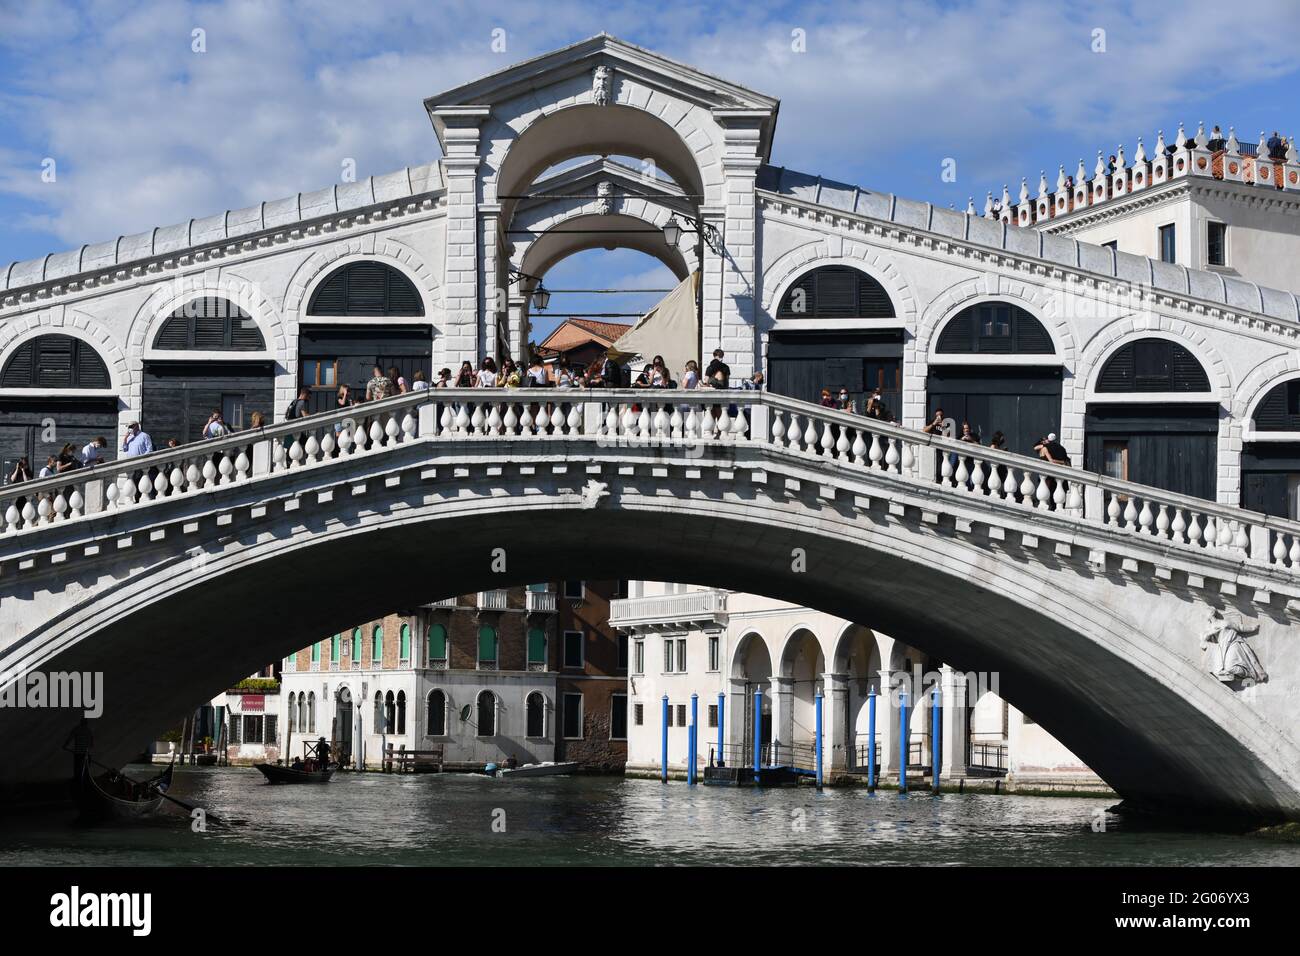 Rialtobrücke, eine der bekanntesten Sehenswürdigkeiten Venedigs, mit ersten Touristen nach Grenzöffnung zu Italien nach dem Covid bedingten Lock down Foto Stock